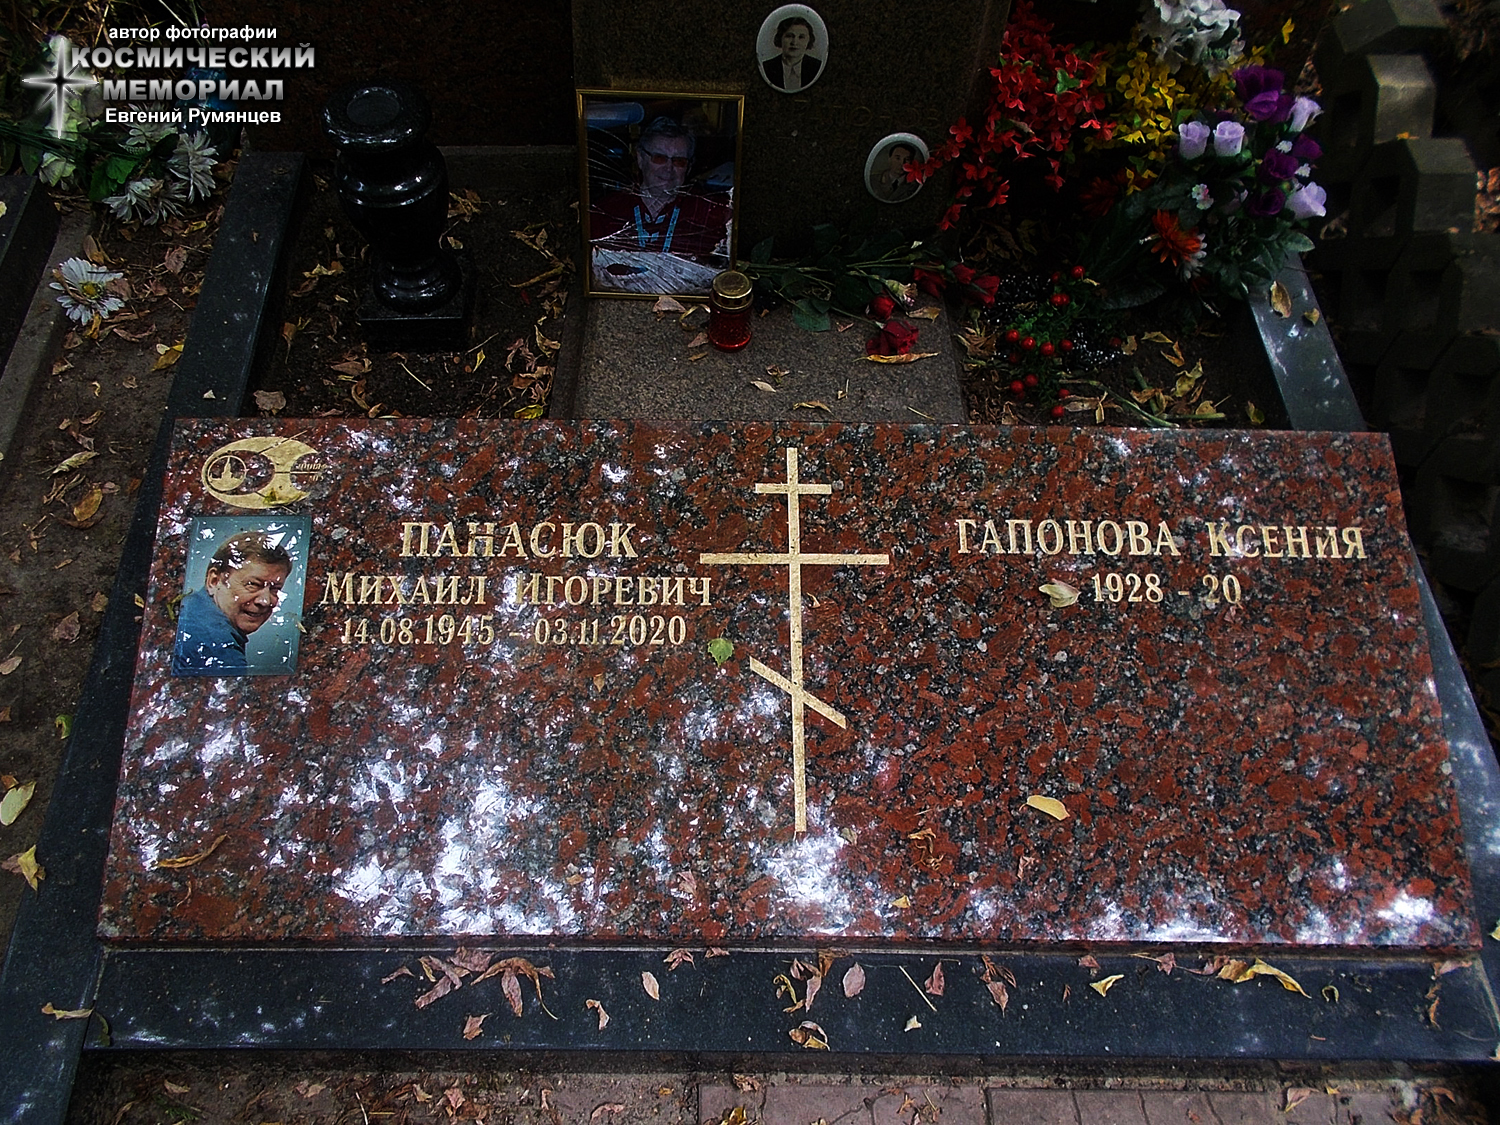 г. Москва, Донское кладбище (уч. № 4, аллея № 3). Место захоронения урны с прахом М.И. Панасюка (август 2021 года)